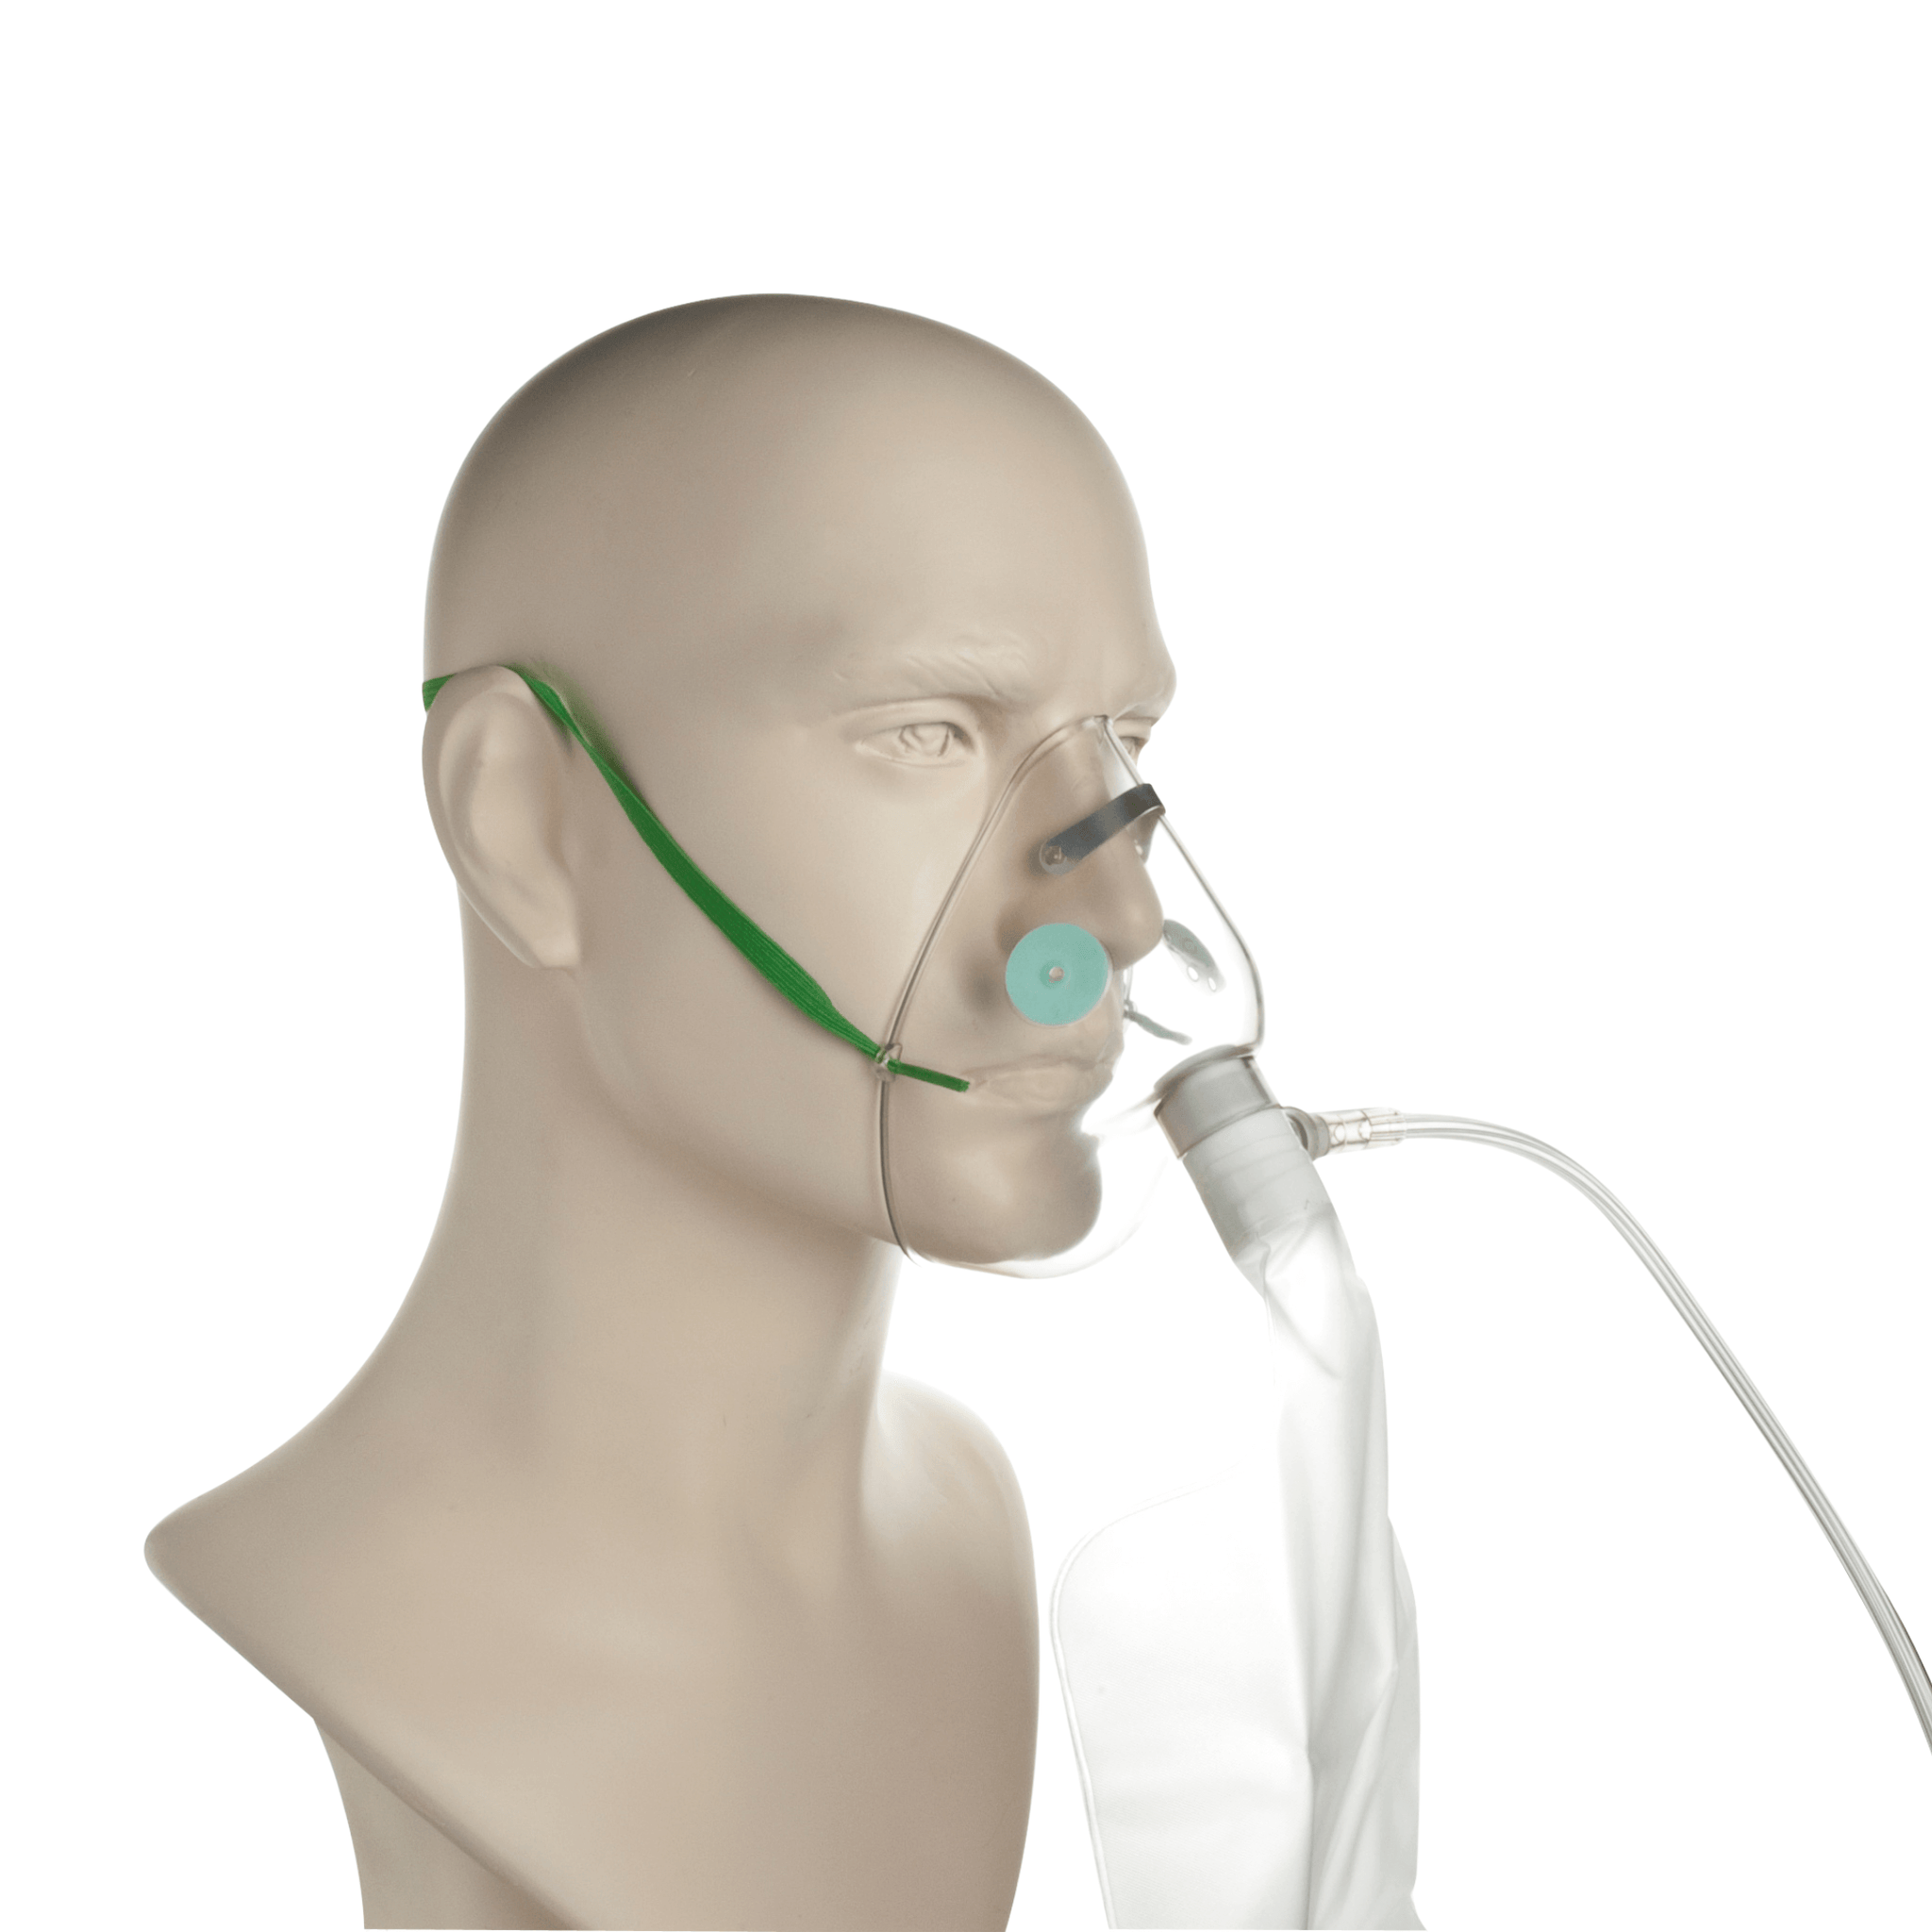 Hi- Concentration Oxygen Mask with Reservoir & Tube- Child